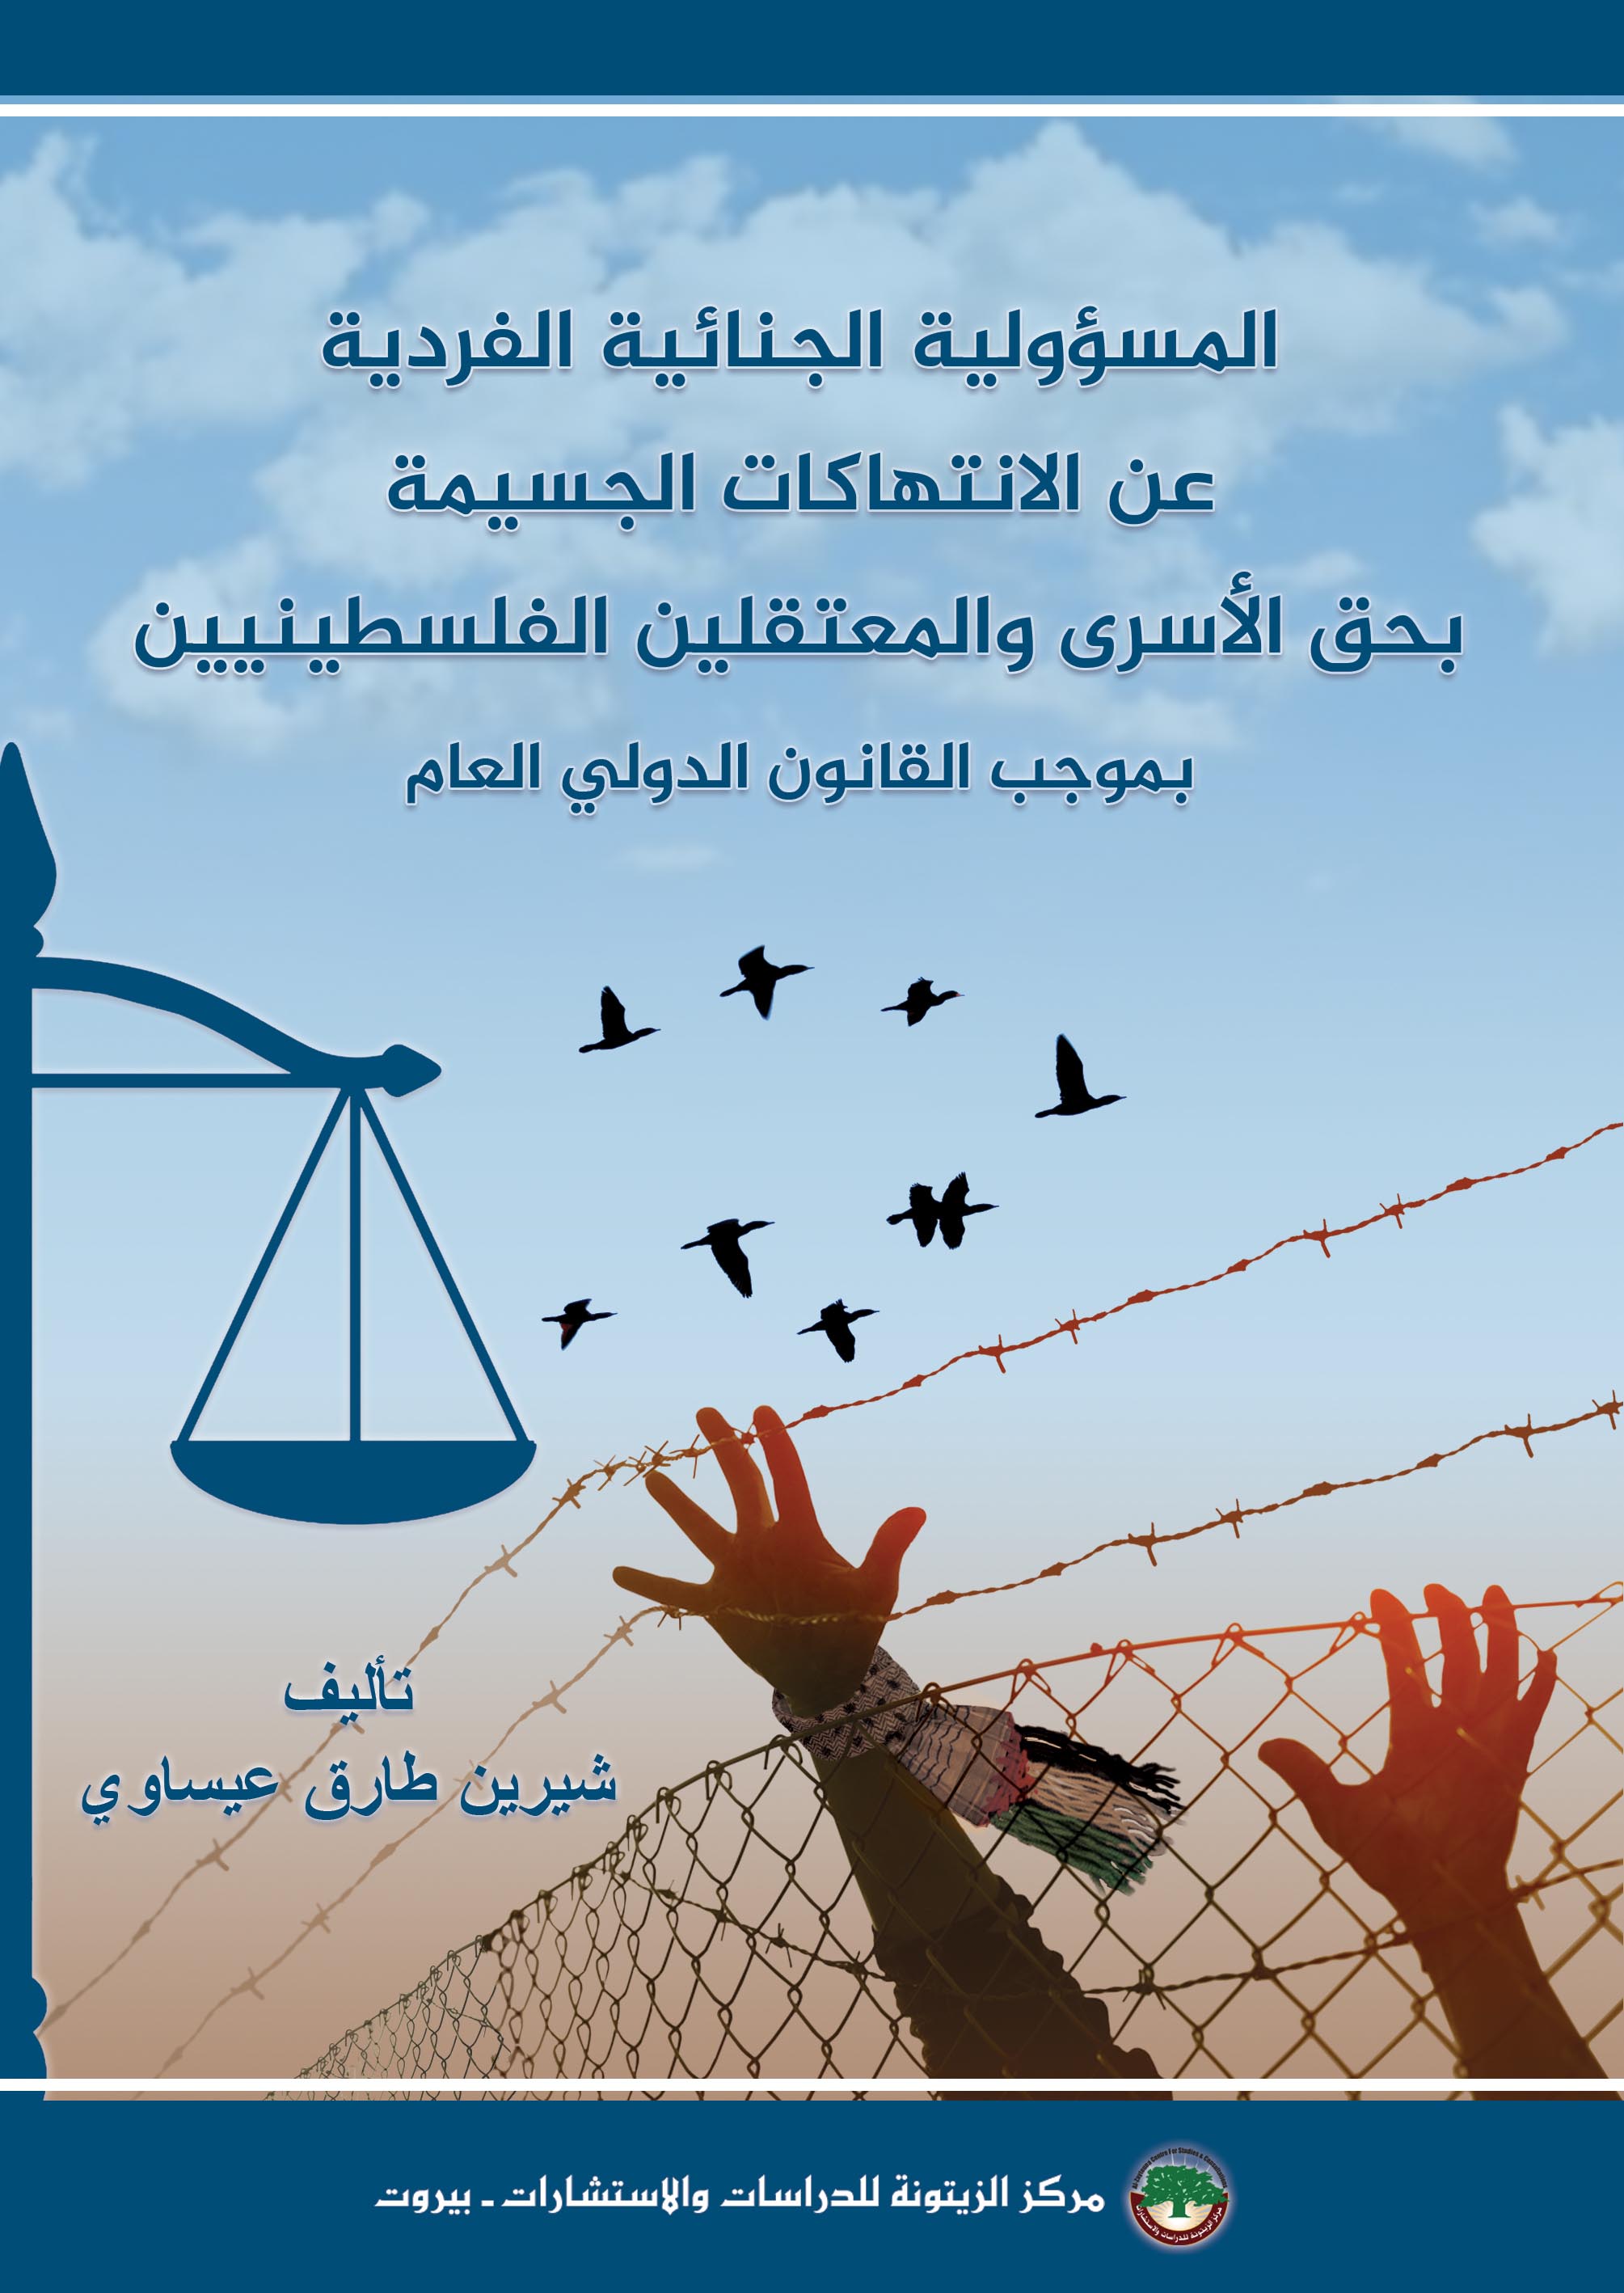 المسؤولية الجنائية الفردية عن الانتهاكات الجسيمة بحق الأسرى والمعتقلين الفلسطينيين بموجب القانون الدولي العام